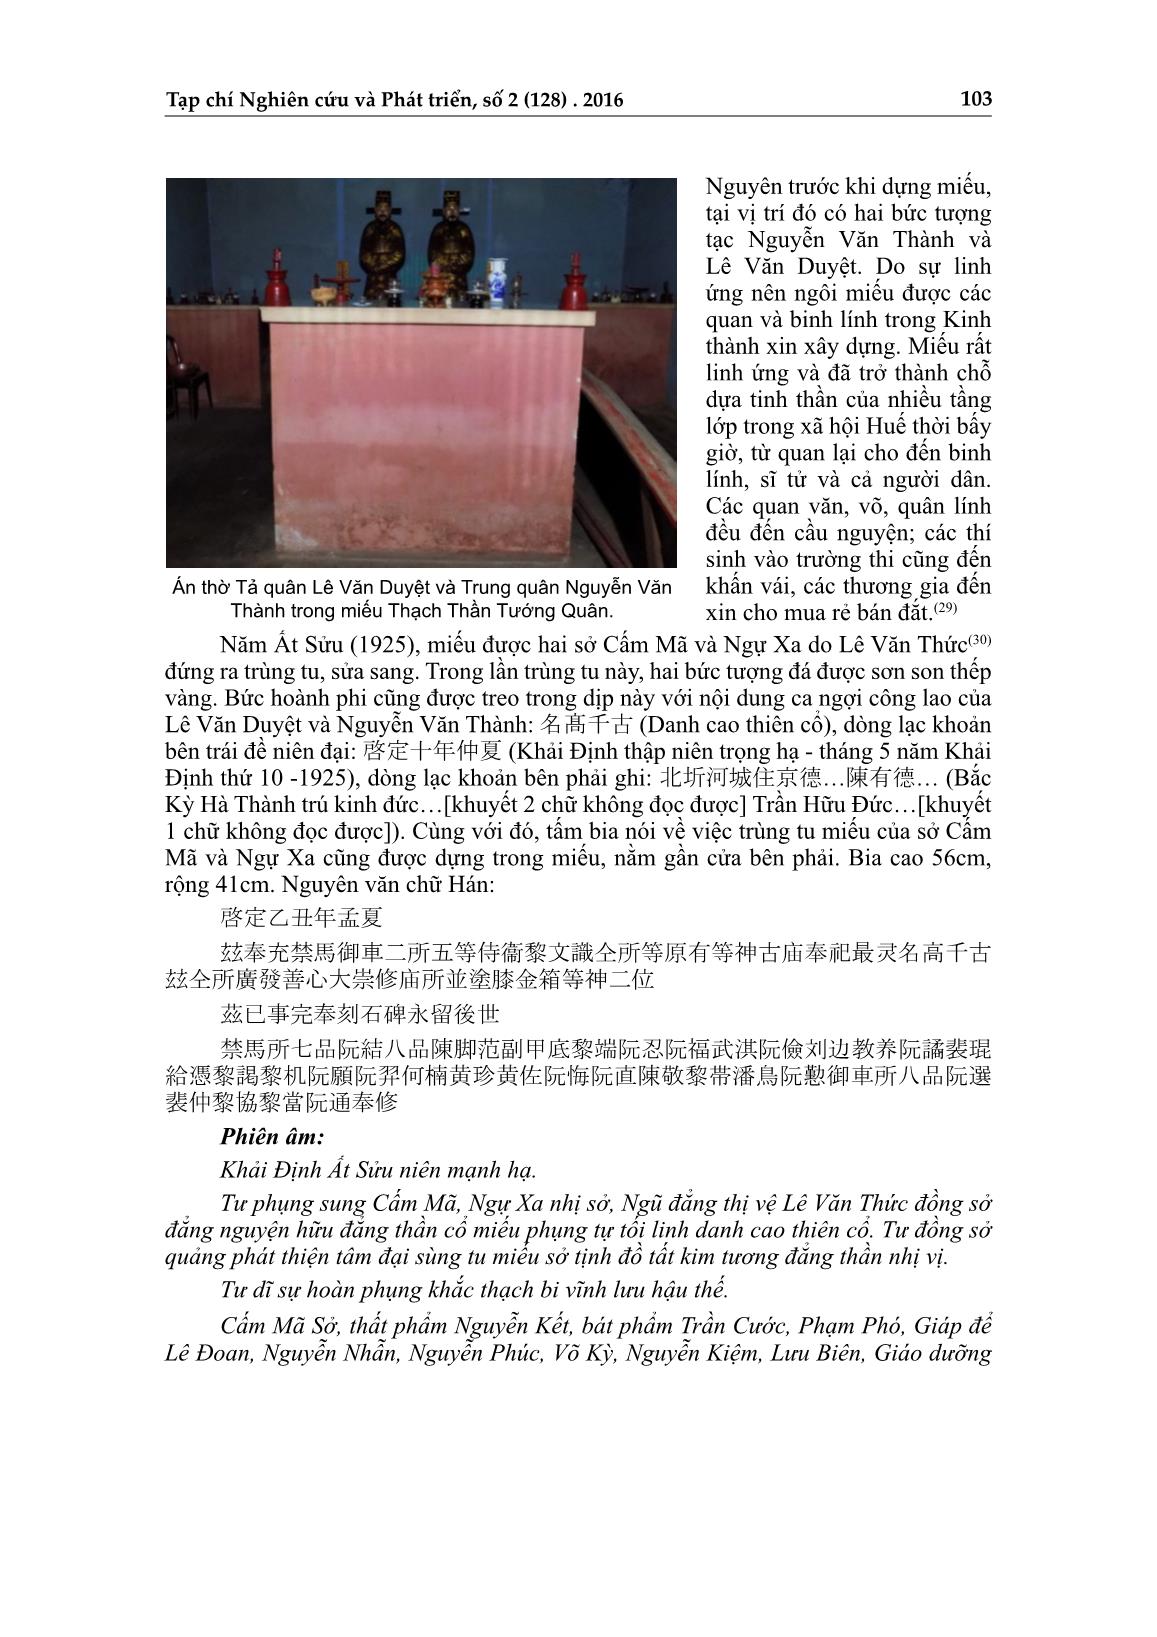 Dấu tích danh nhân Nguyễn Văn Thành trên đất Thừa Thiên Huế trang 9